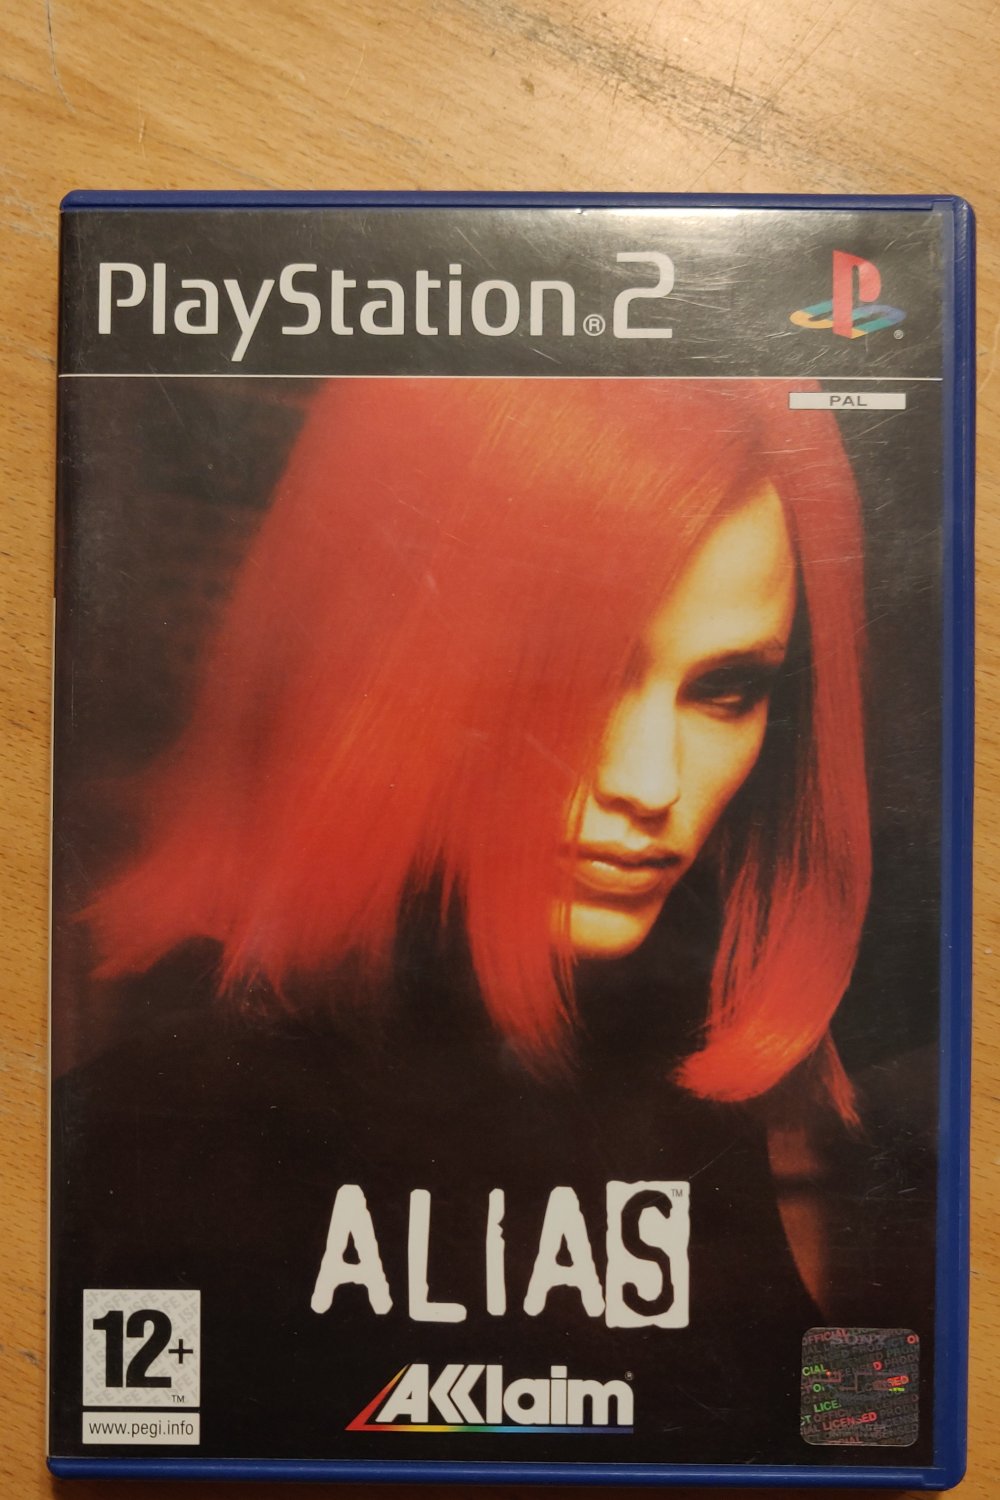 Alias (Playstation 2 PAL) (CIB)